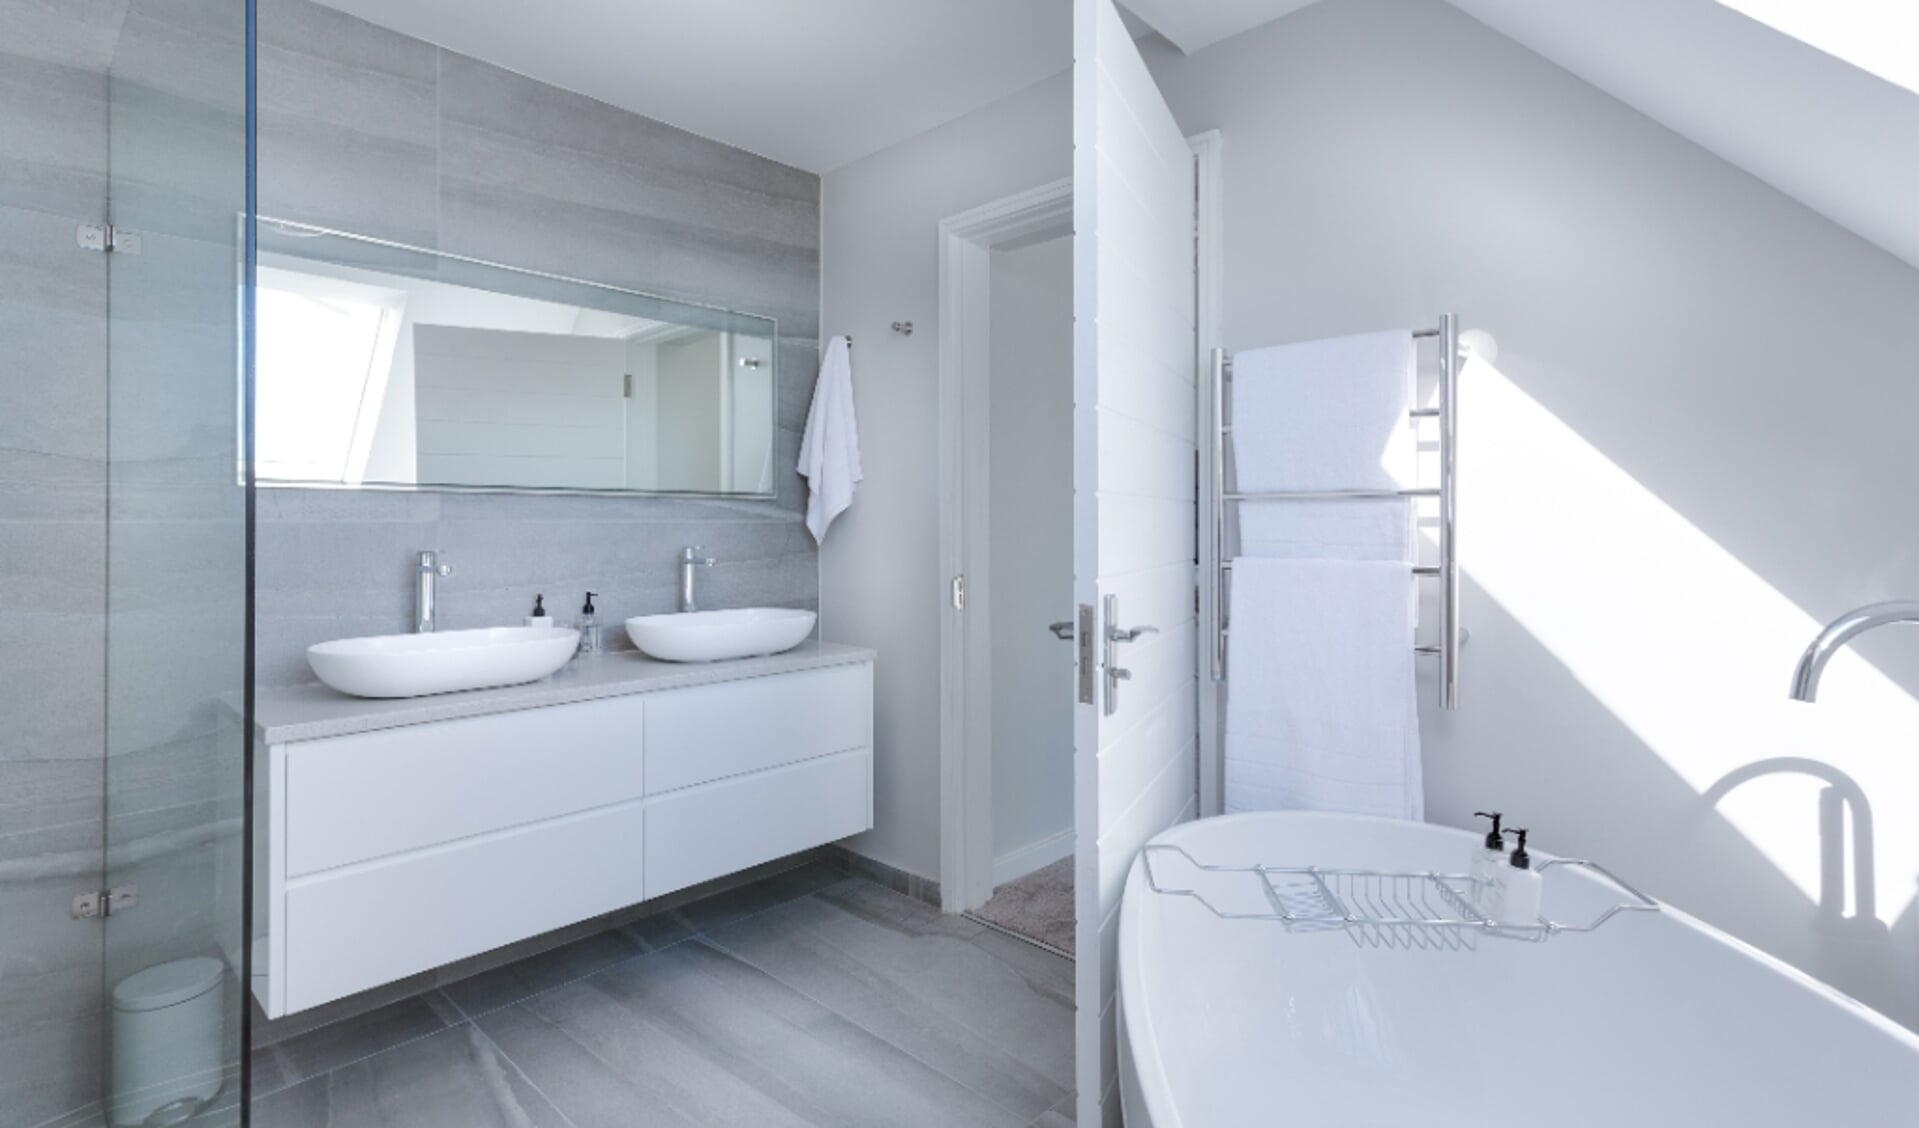 Hoe kun je slim gebruik maken van ruimte in je keuken en badkamer?